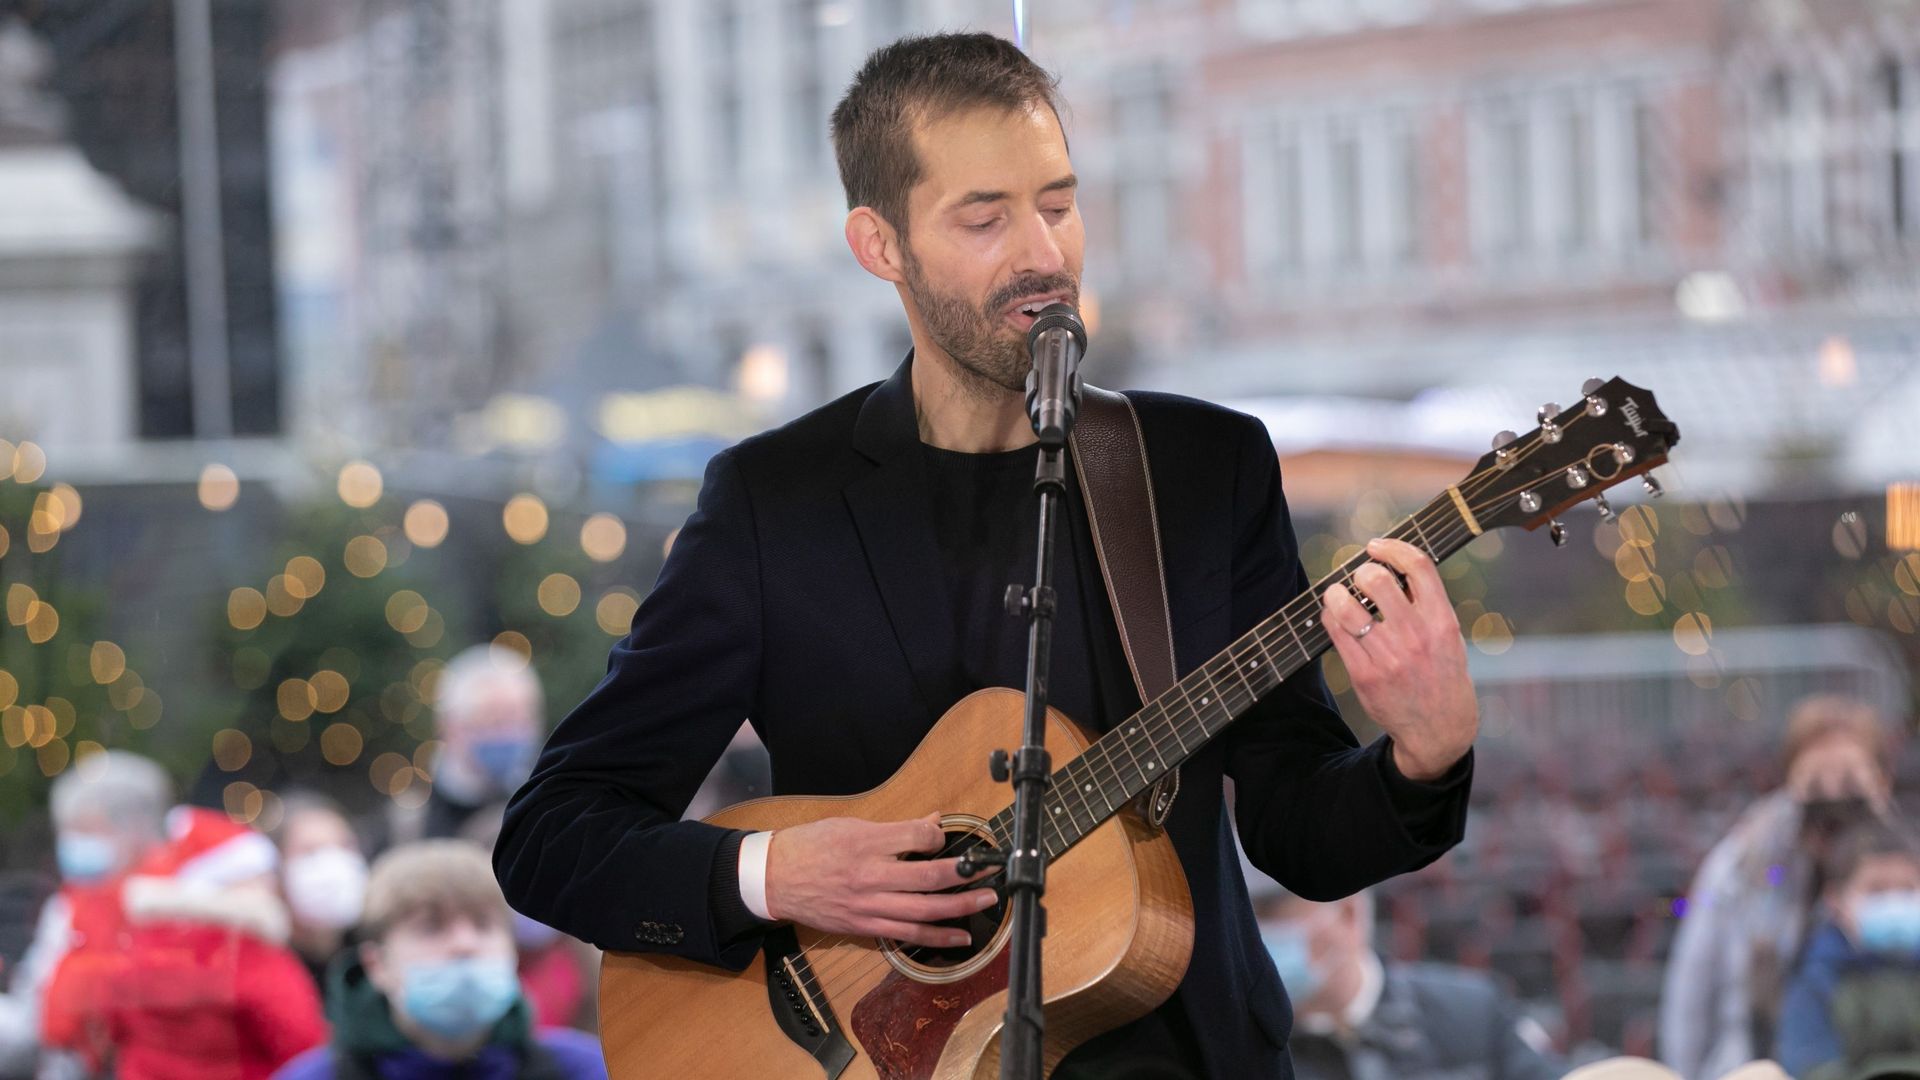 Viva For Life : Antoine Armedan interprète un guitare voix dans sa ville natale, Tournai